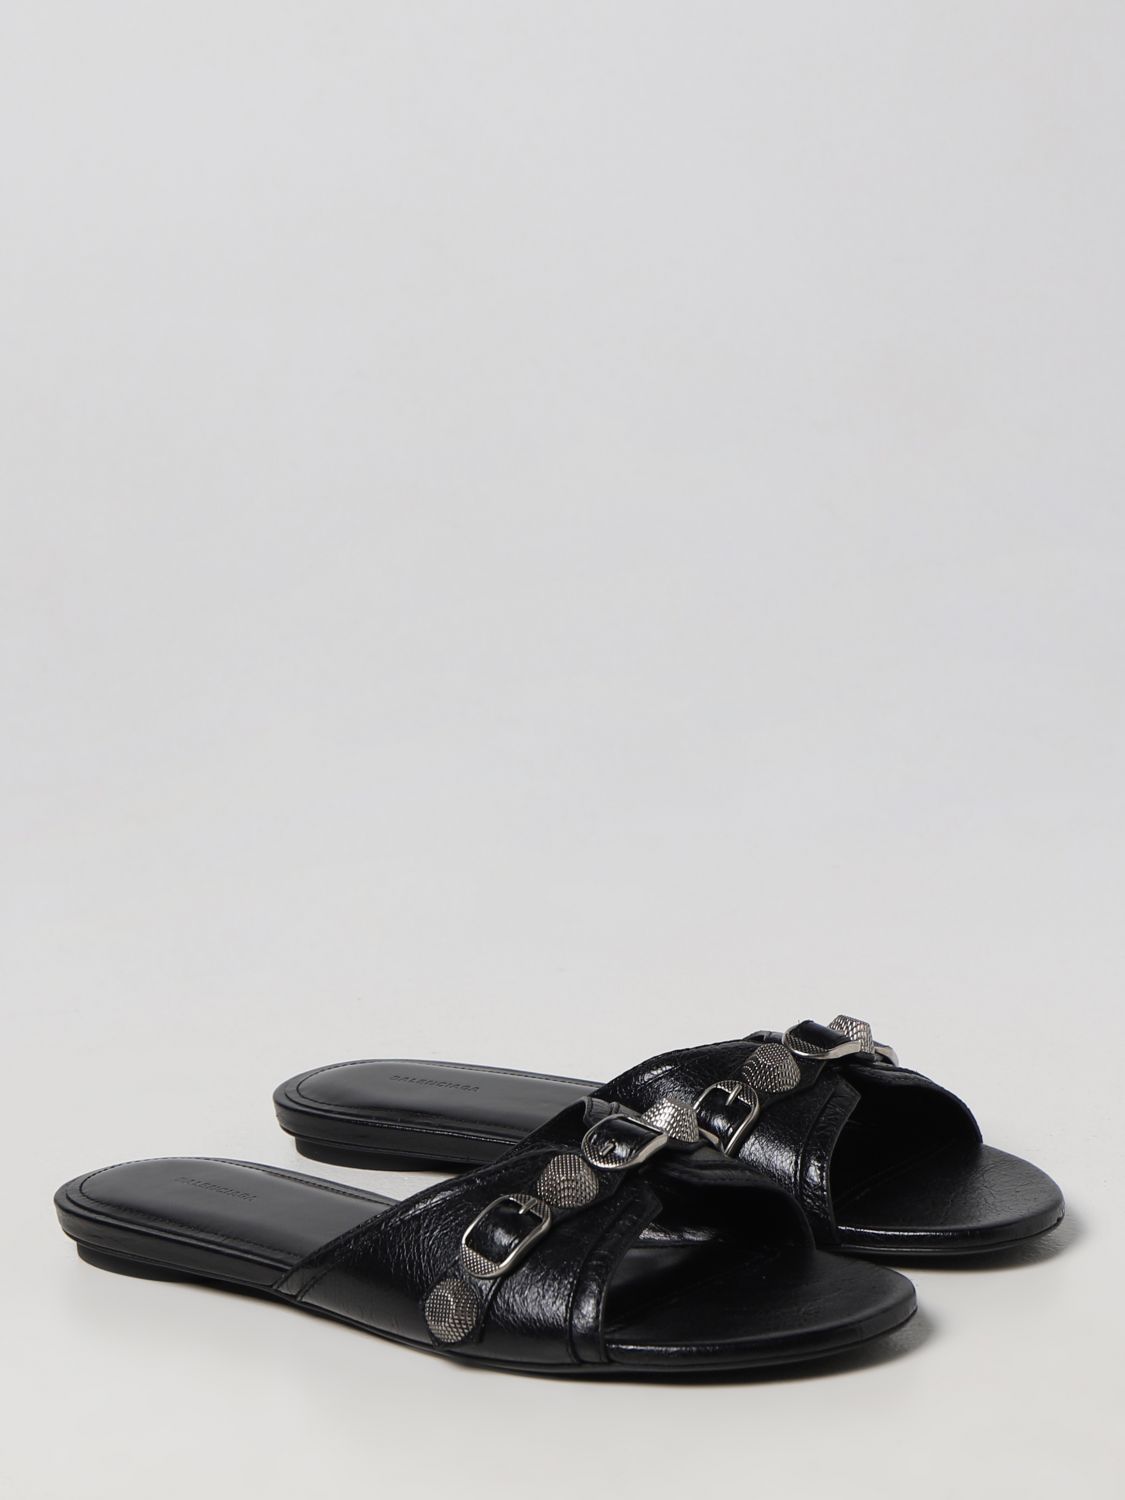 Flat sandals Balenciaga: Balenciaga flat sandals for women black 2